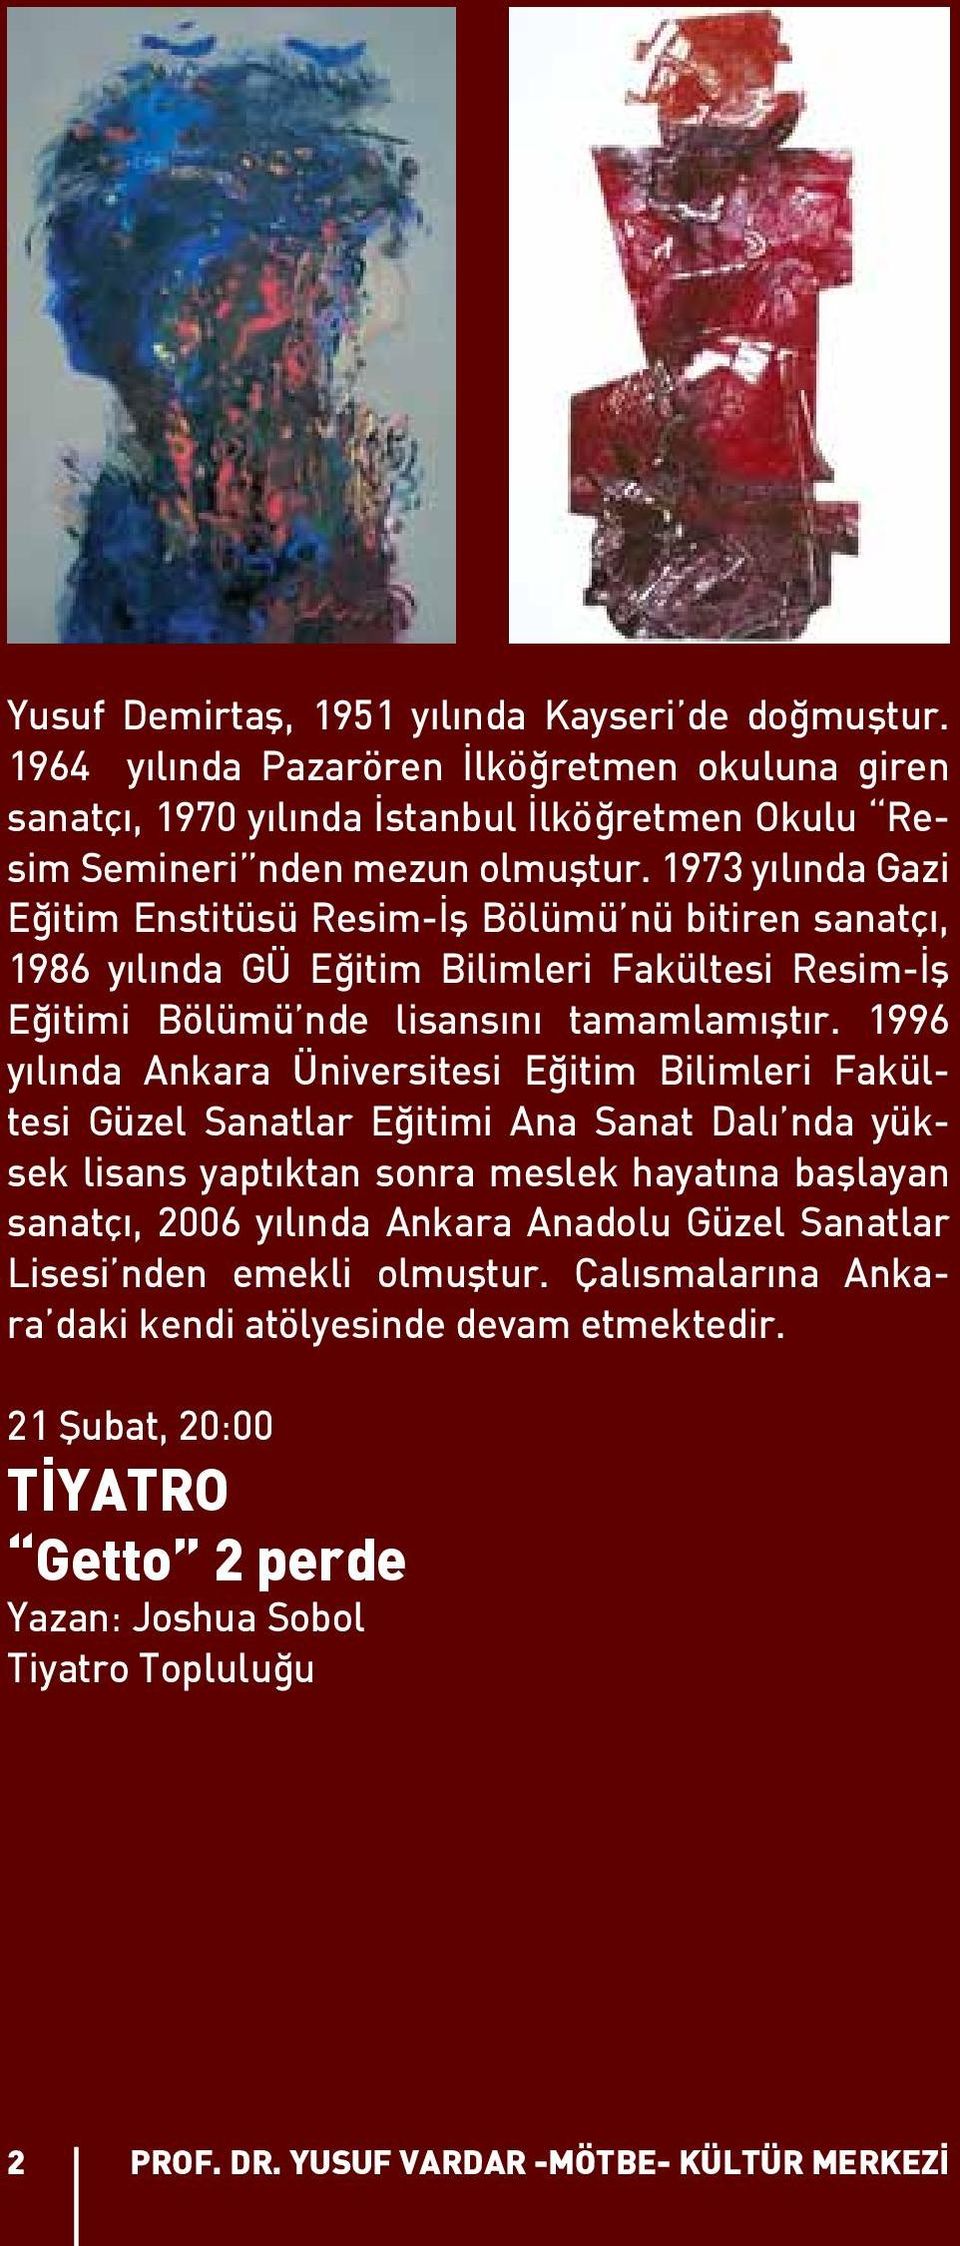 1996 yılında Ankara Üniversitesi Eğitim Bilimleri Fakültesi Güzel Sanatlar Eğitimi Ana Sanat Dalı nda yüksek lisans yaptıktan sonra meslek hayatına başlayan sanatçı, 2006 yılında Ankara Anadolu